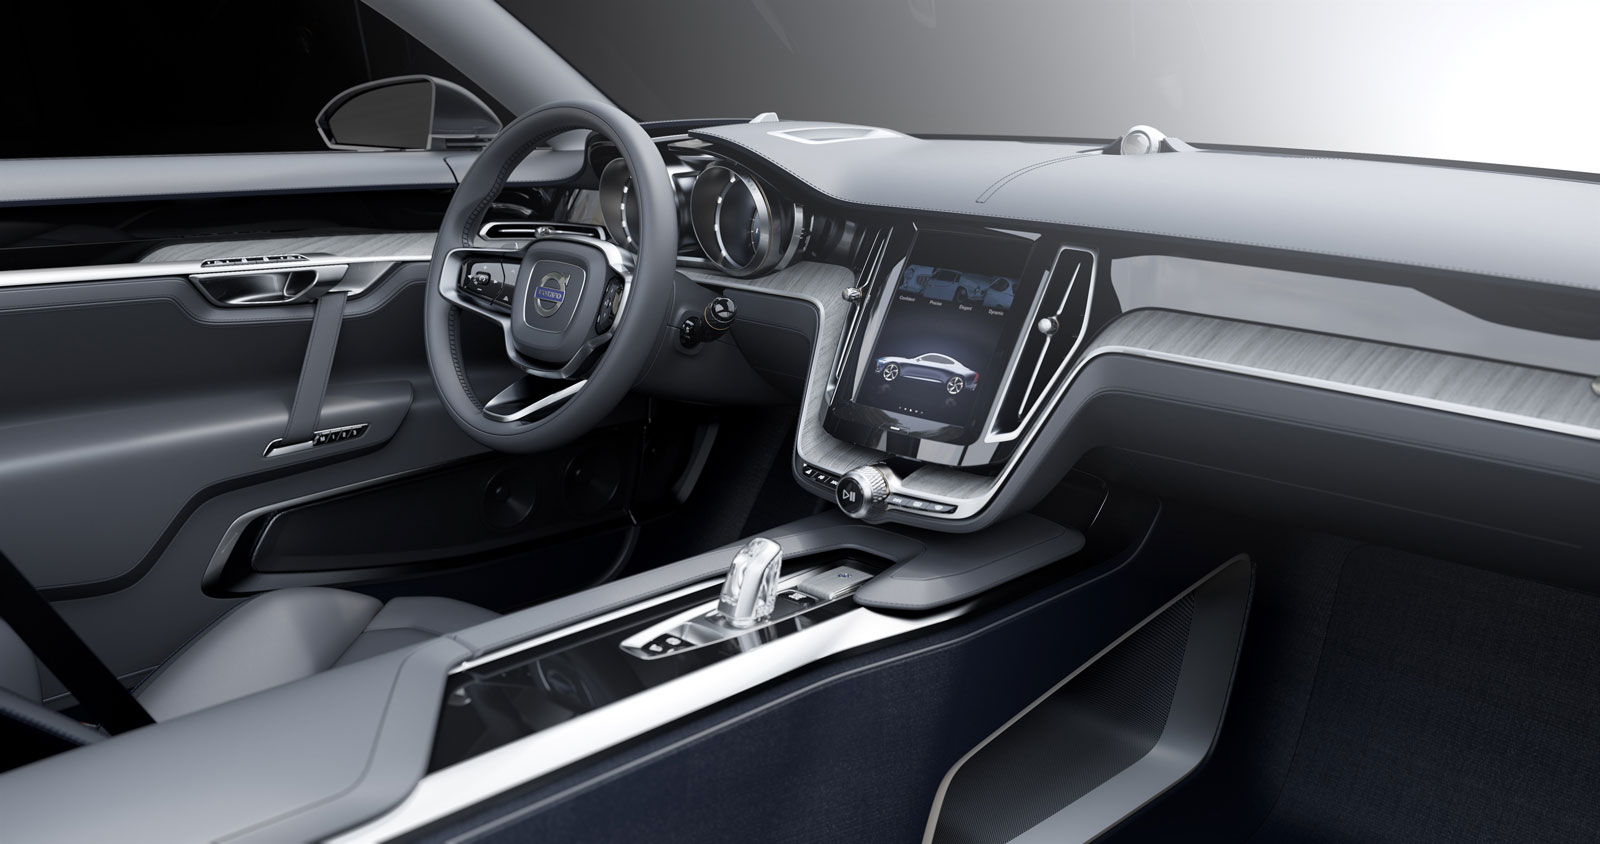 Volvo Concept Coupe, 2013 - Interior